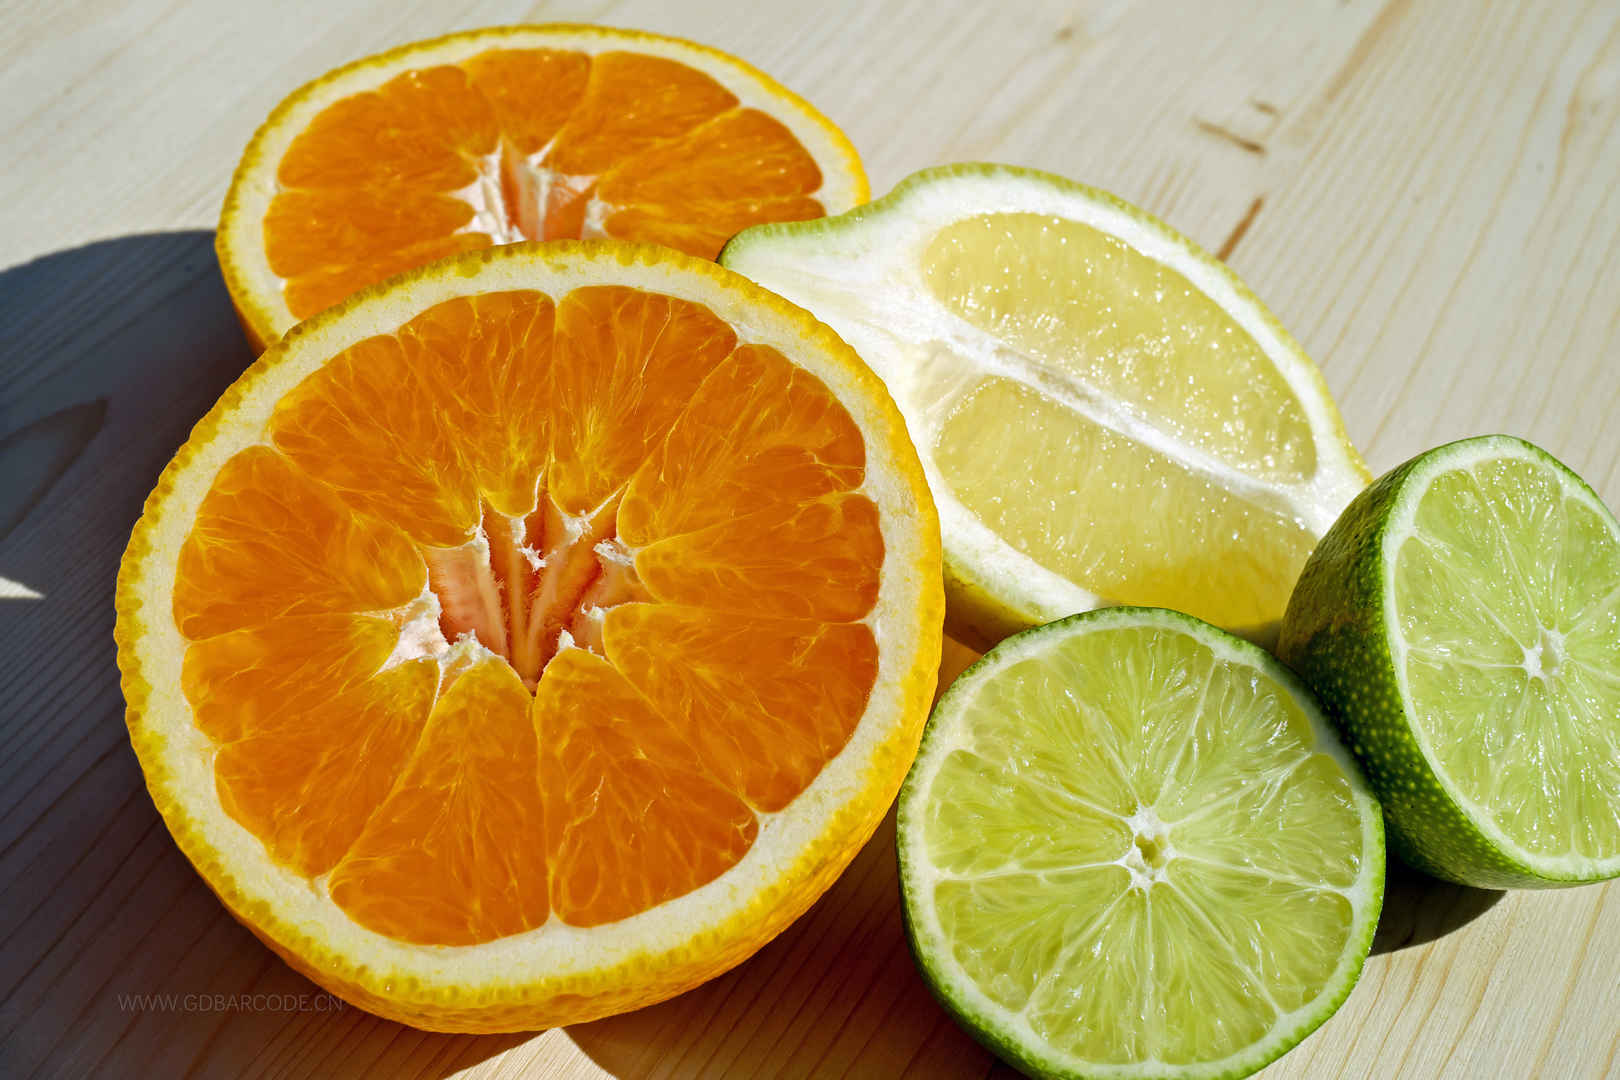 水果 热带水果 柑橘类水果 切片 橙 柠檬 美味